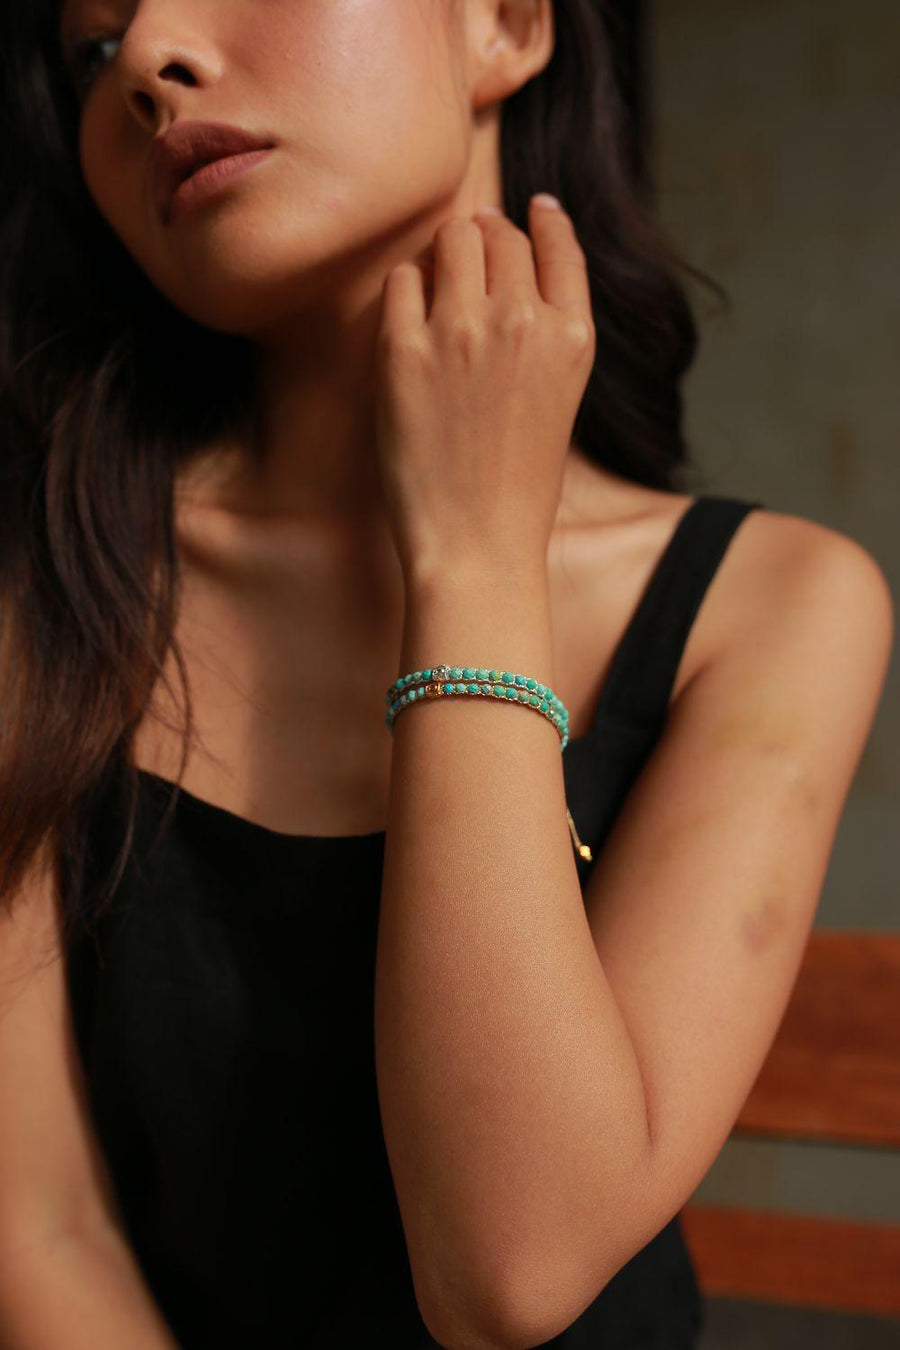 Turquoise Bracelet | Gold - Samapura Jewelry